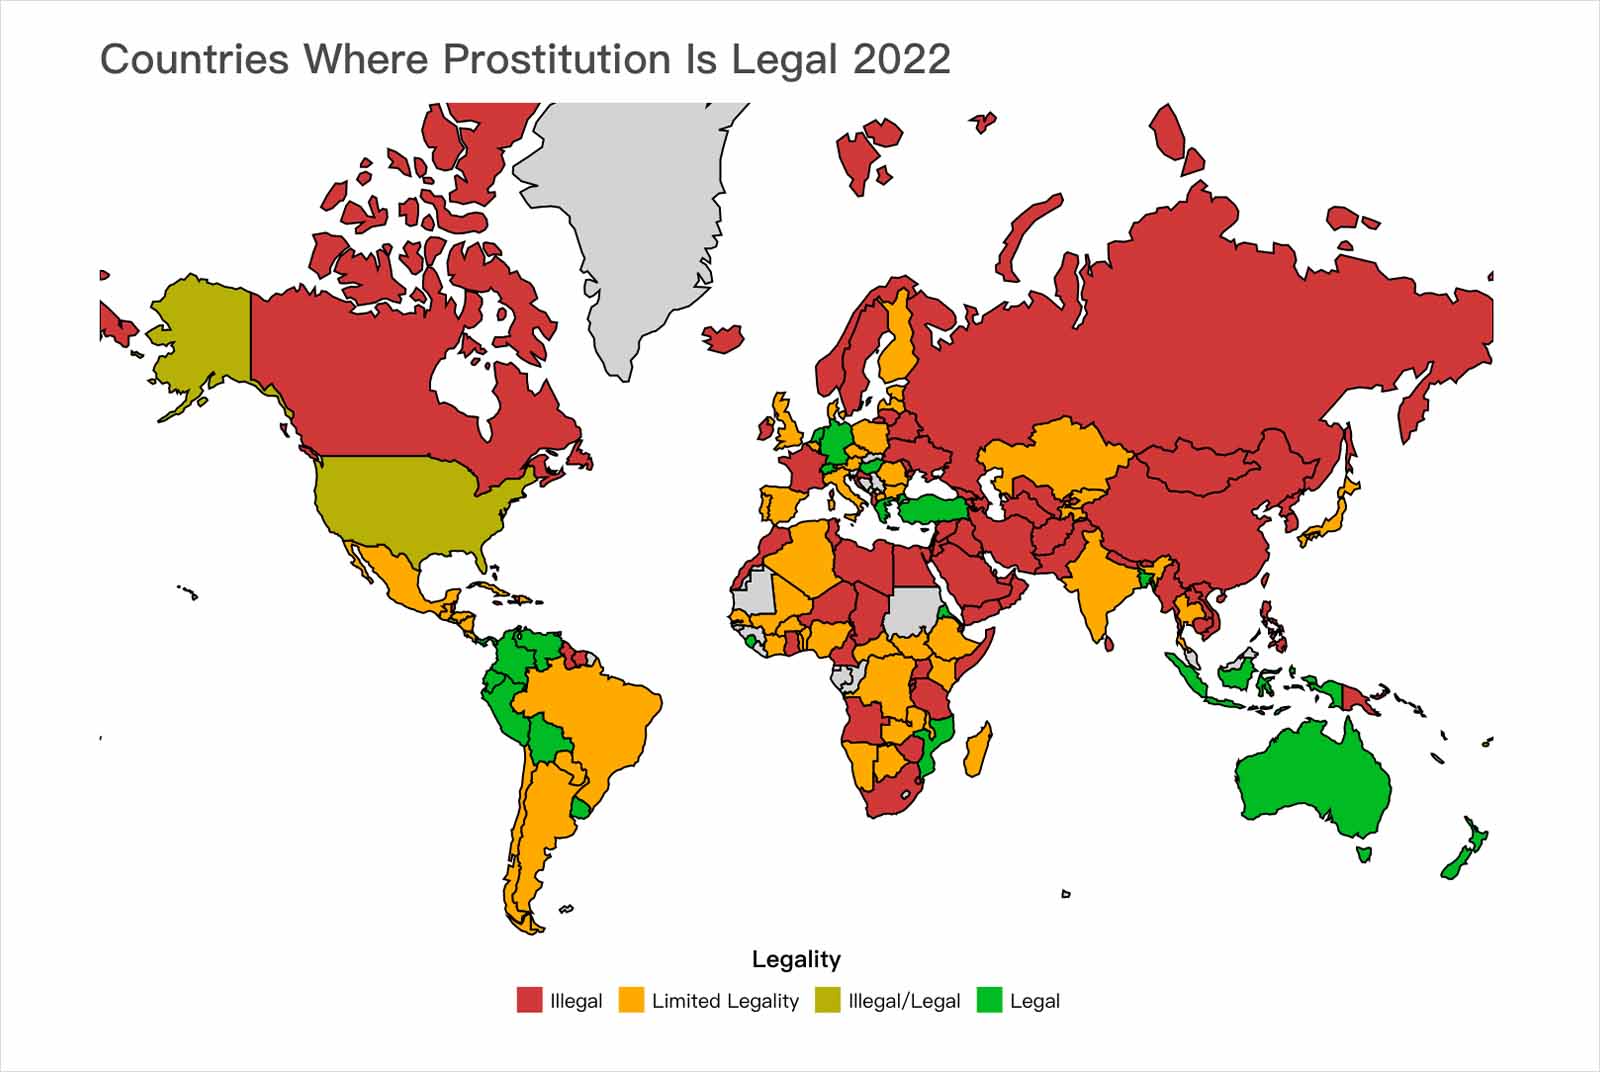 性交易-性產業-性工作-全球-法律-政策-合法